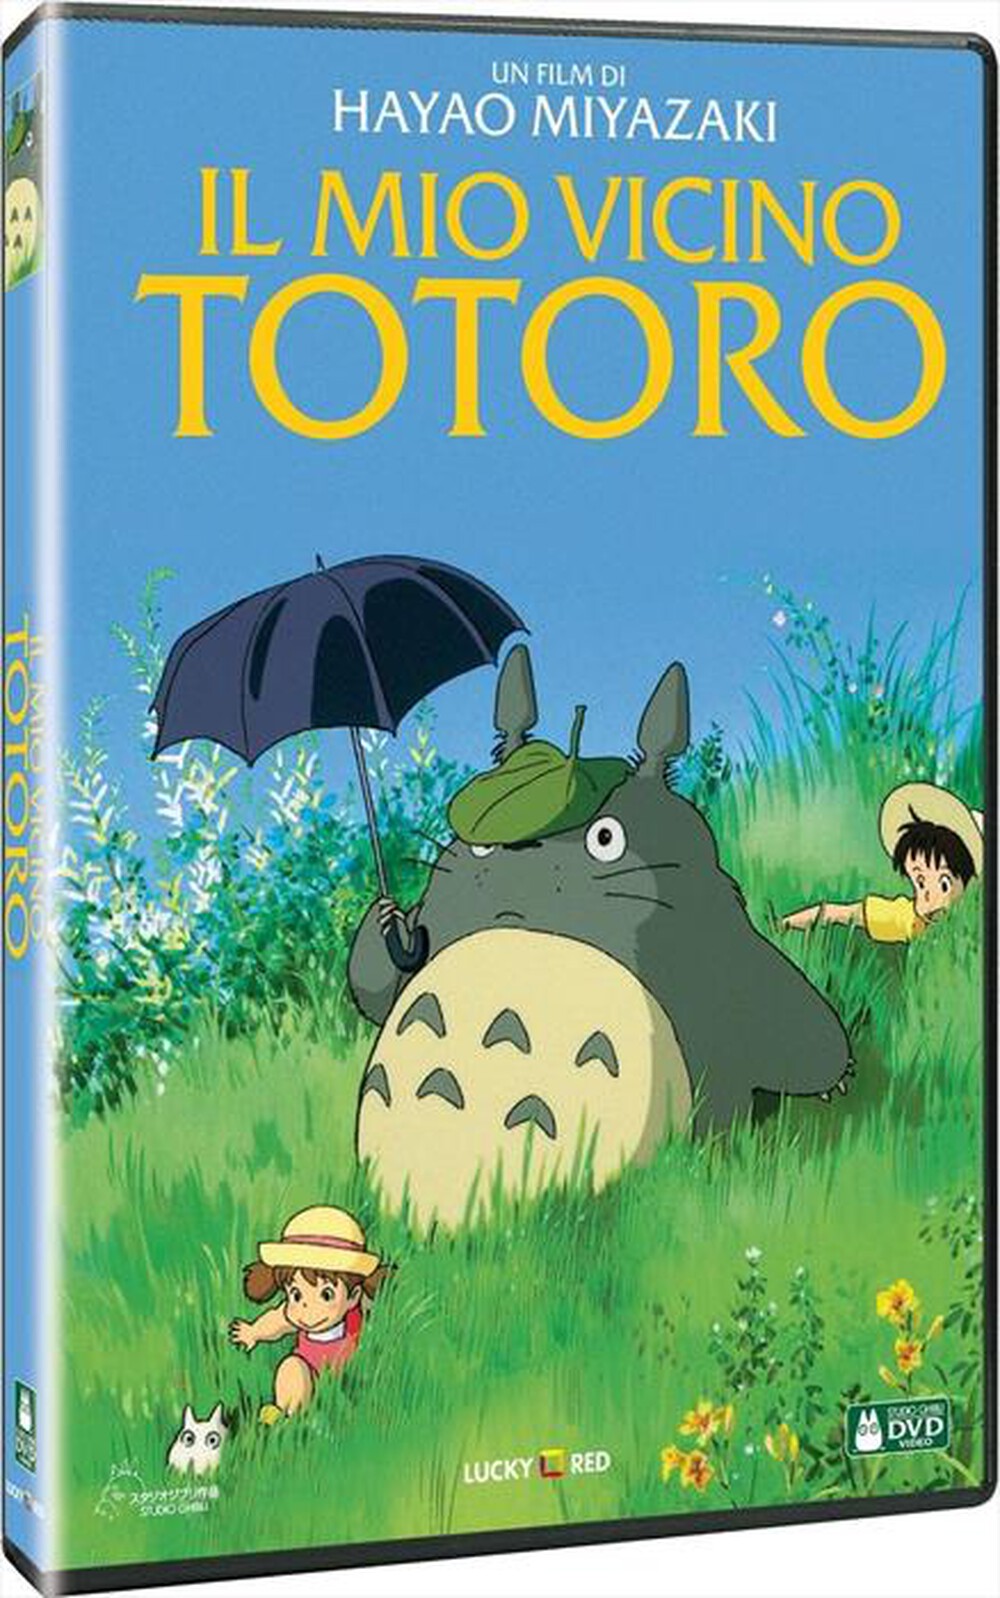 "WARNER HOME VIDEO - Mio Vicino Totoro (Il)"